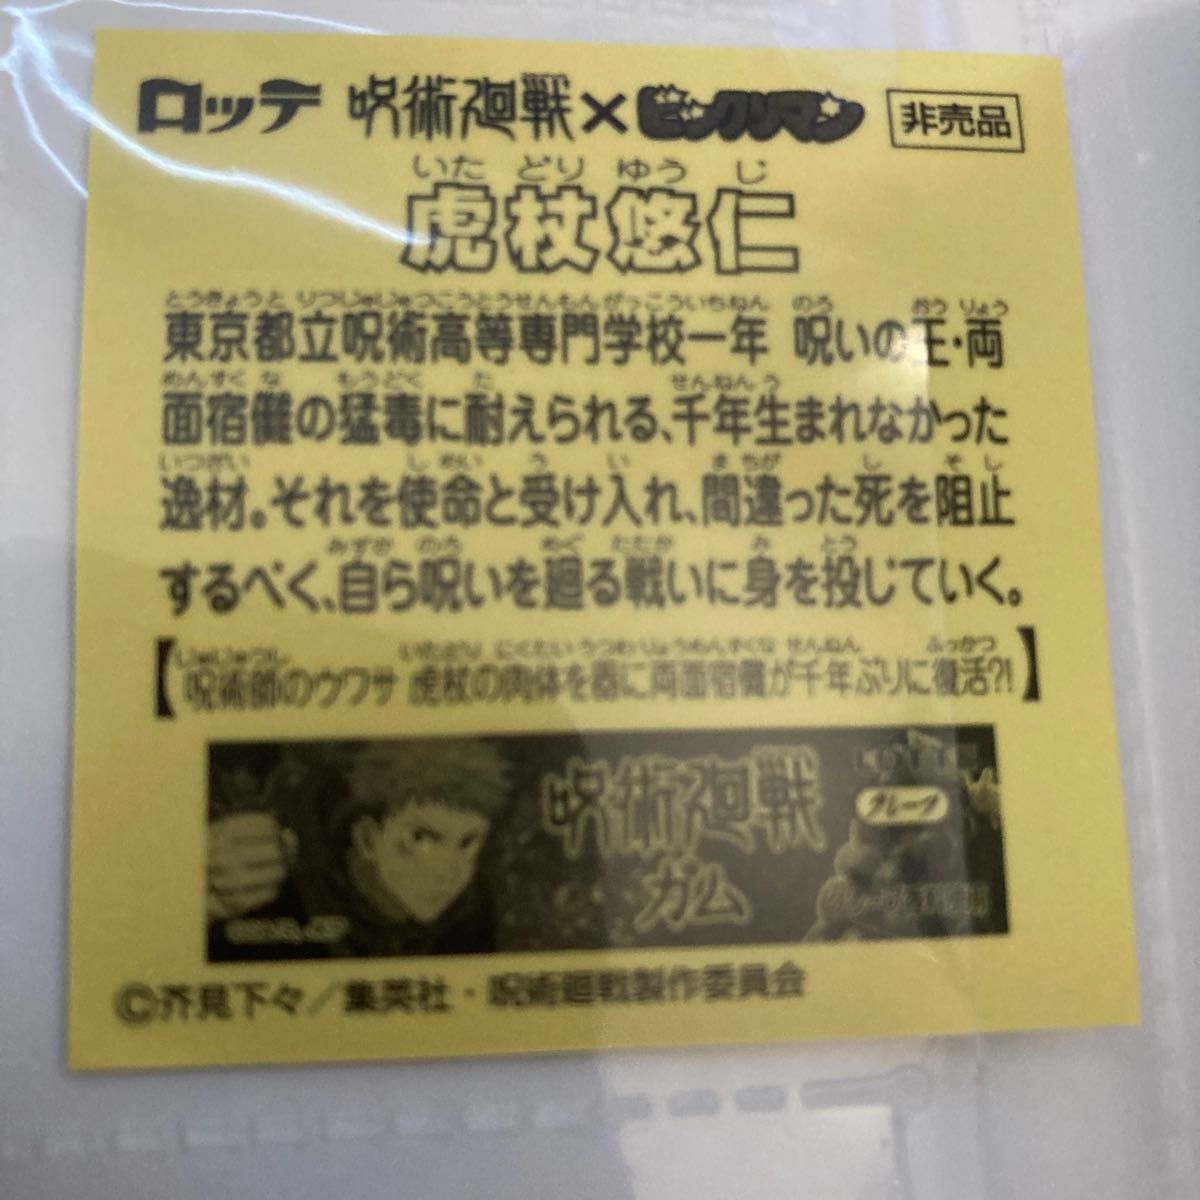 ビックリマン 呪術廻戦 キャンペーン 当選品 アルバム 非売品シール1枚 レア